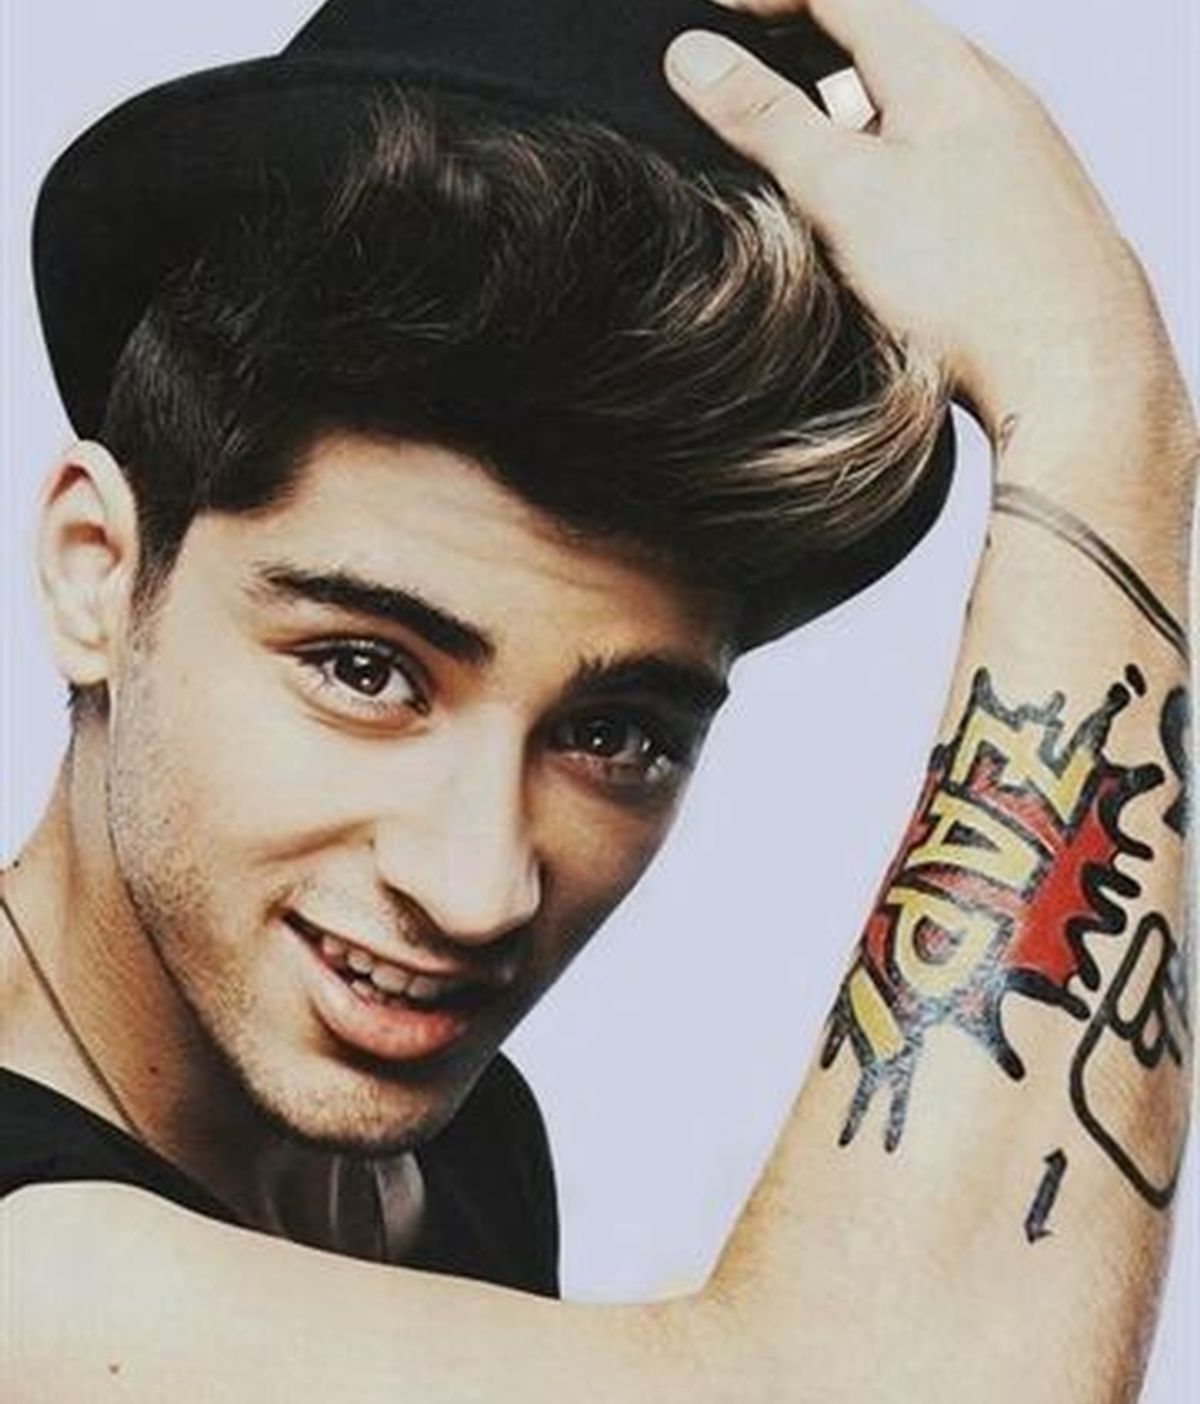 El curioso tatuaje de Zayn Malik, de One Direction